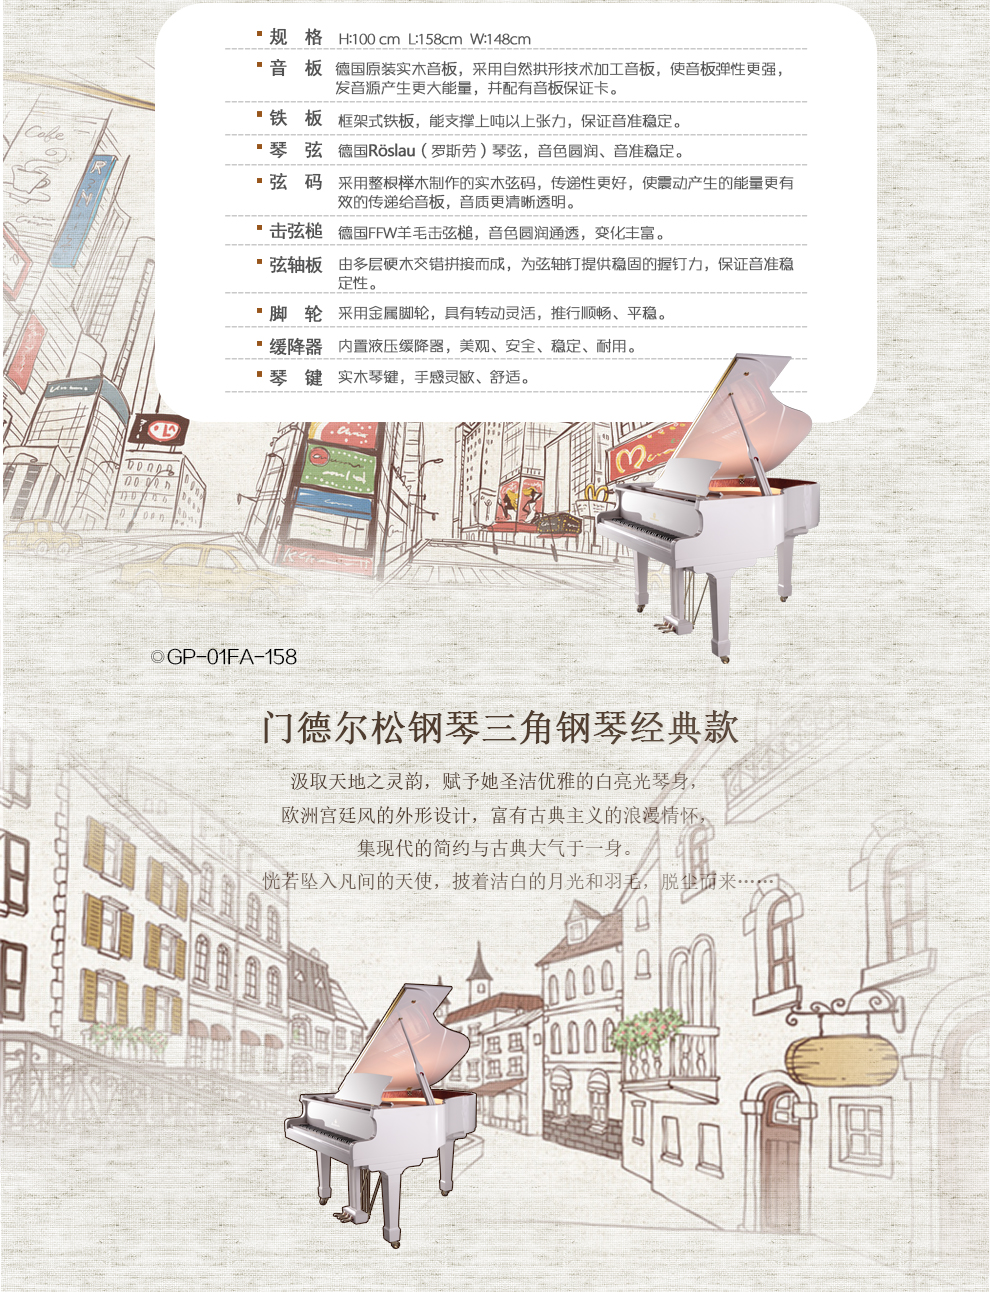 门德尔松钢琴GP-01FA-158图片